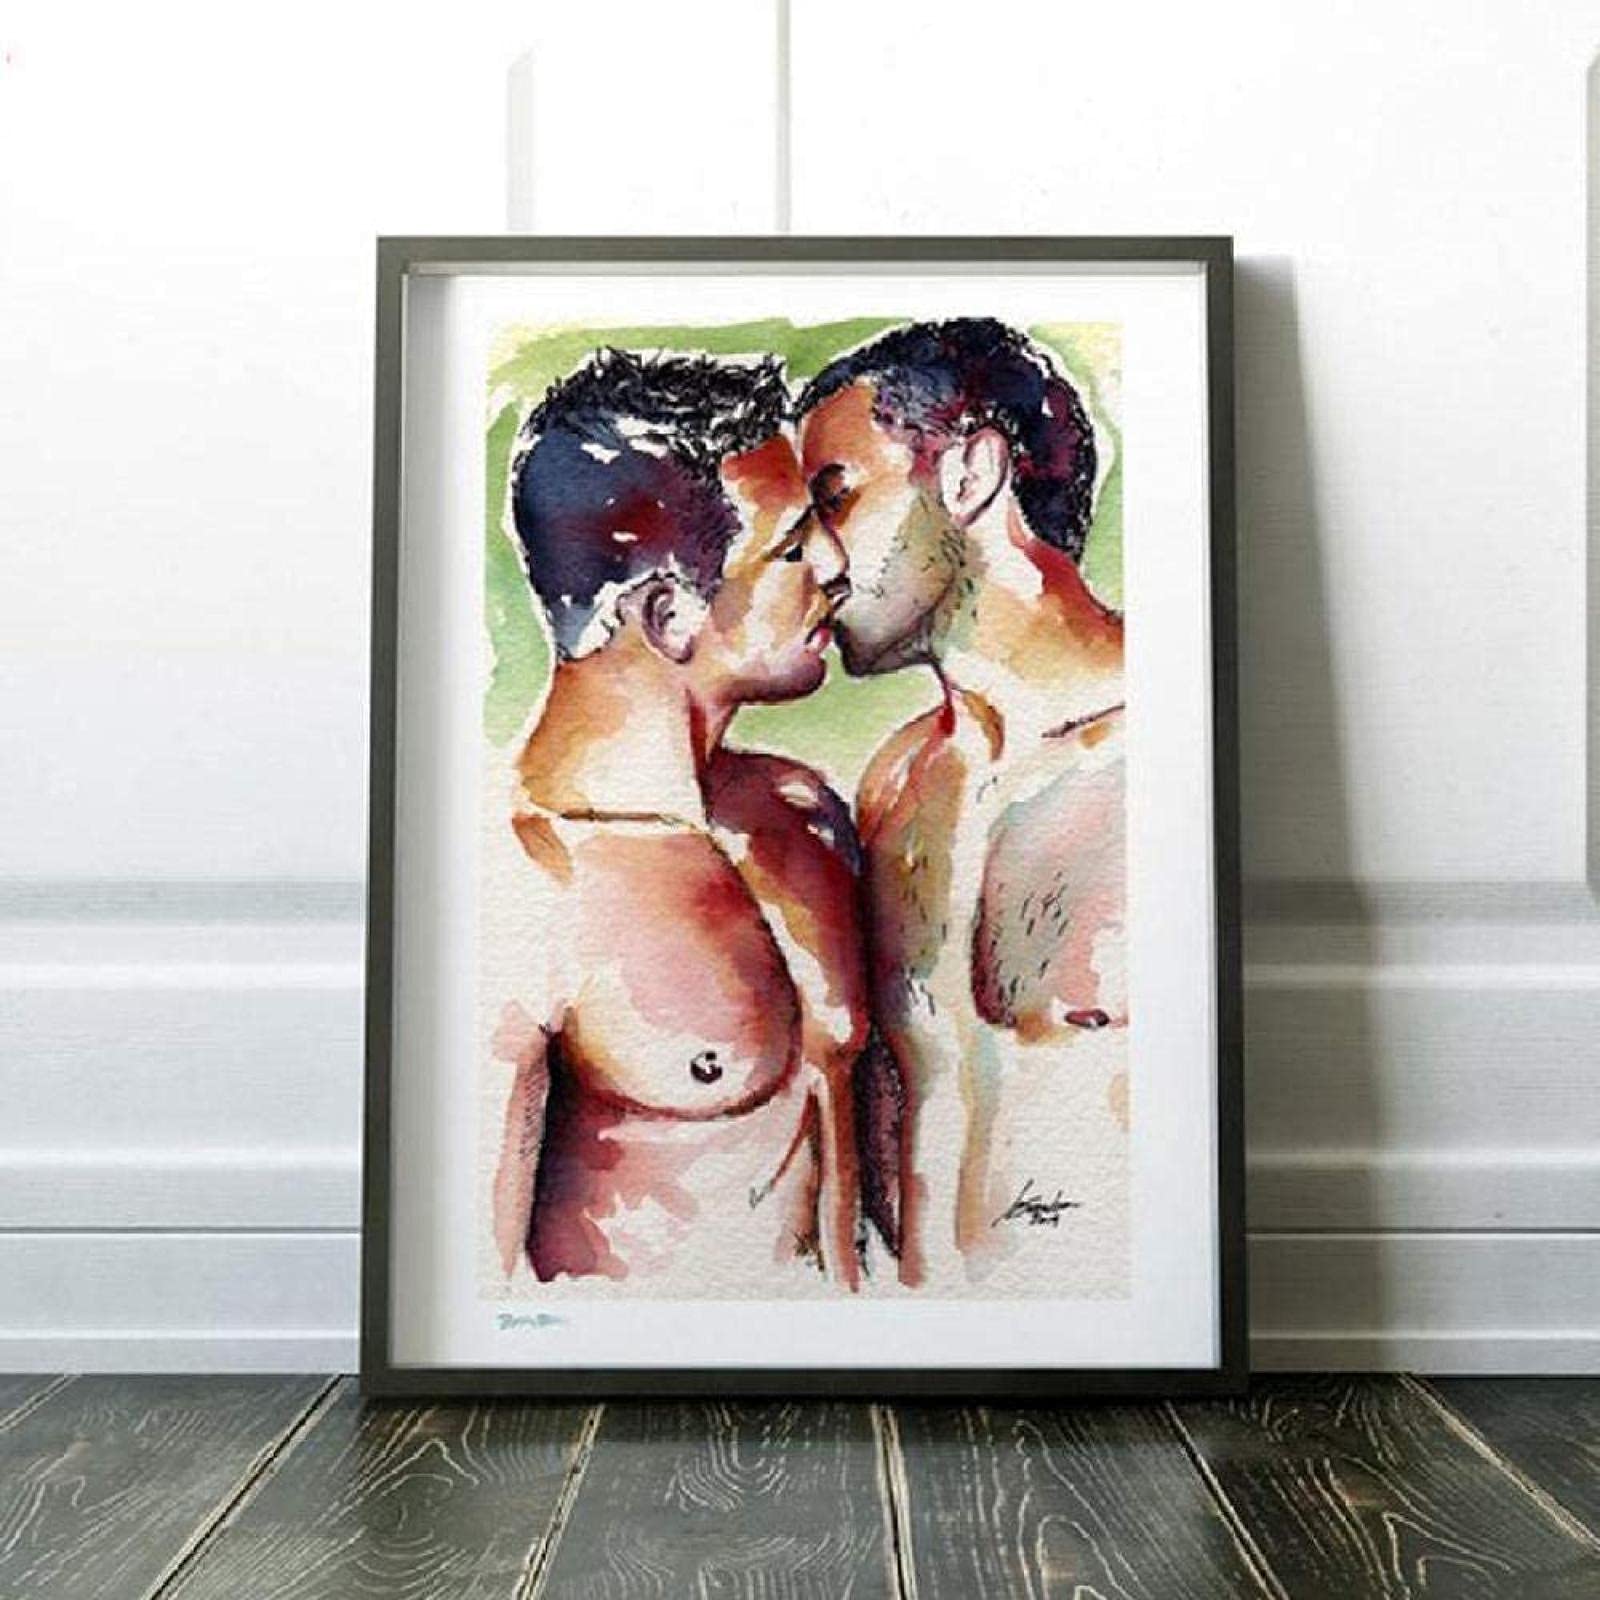 SXXRZA Drucke für Wände 70x90cm Kein Rahmen Gay Love Romantischer Kuss Poster Vintage Wandkunst Skandinavisches Ölgemälde Modernes Wohnzimmer Schlafzimmer Dekor